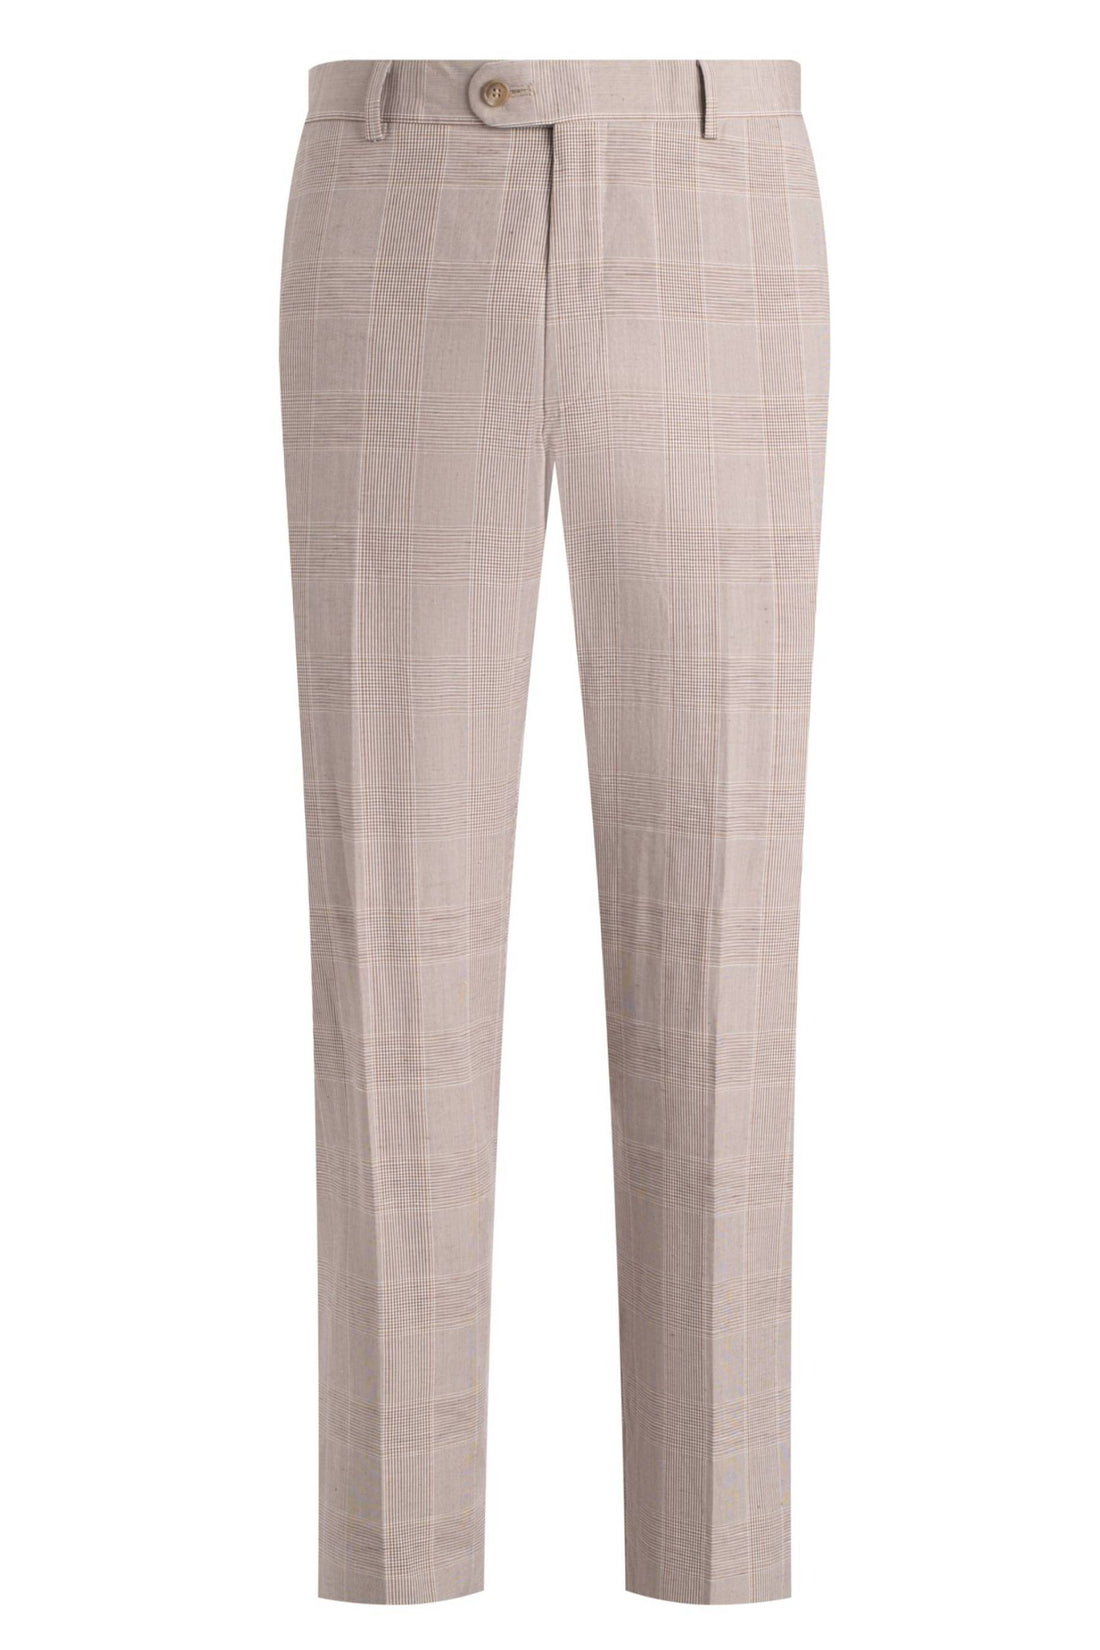 Heritage Gold Tan White Plaid Silk Linen Suit Front Pant